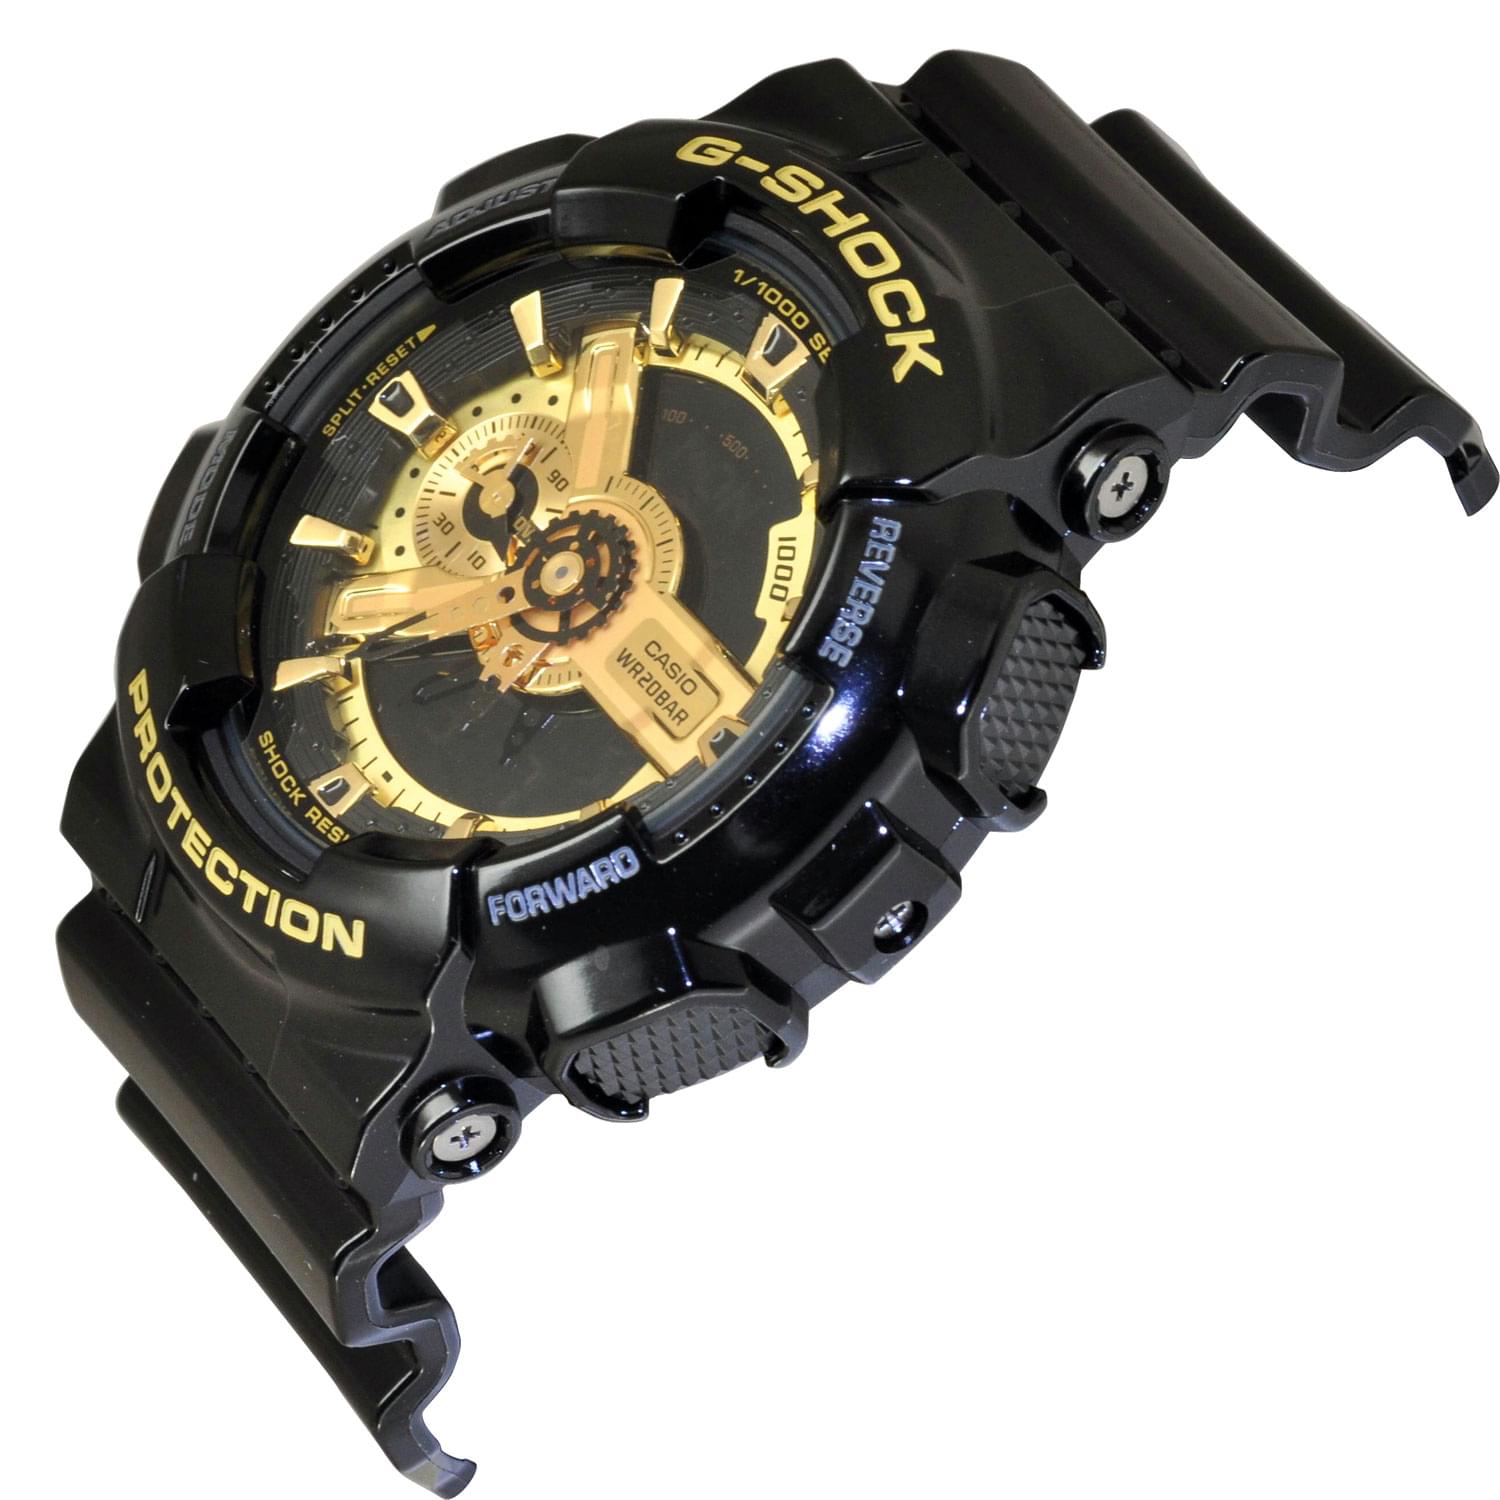 G Shock GA-110GB-1ADR có cả đồng hồ kim và số giúp người dùng thuận tiện quan sát thời gian